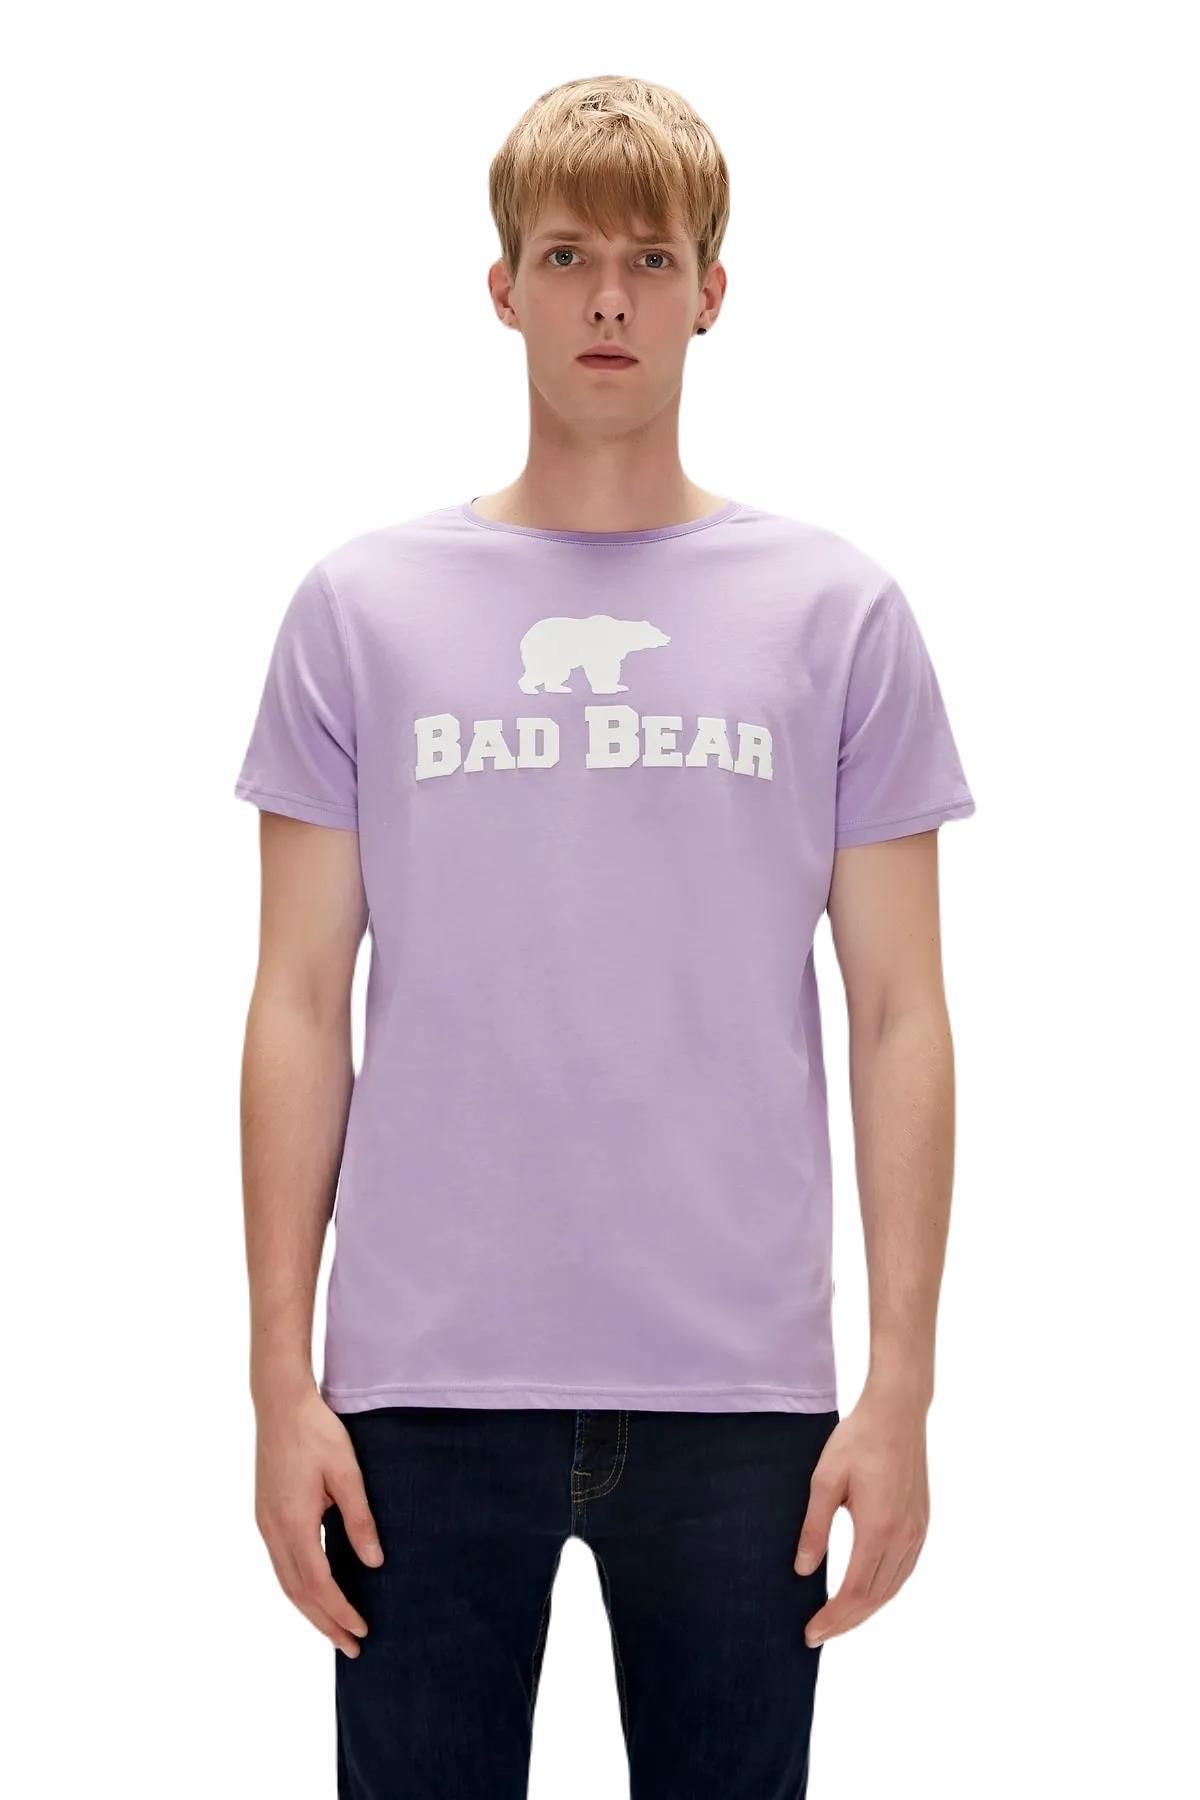 Bad Bear 19.01.07.002-c121 Tee Erkek T-shirt